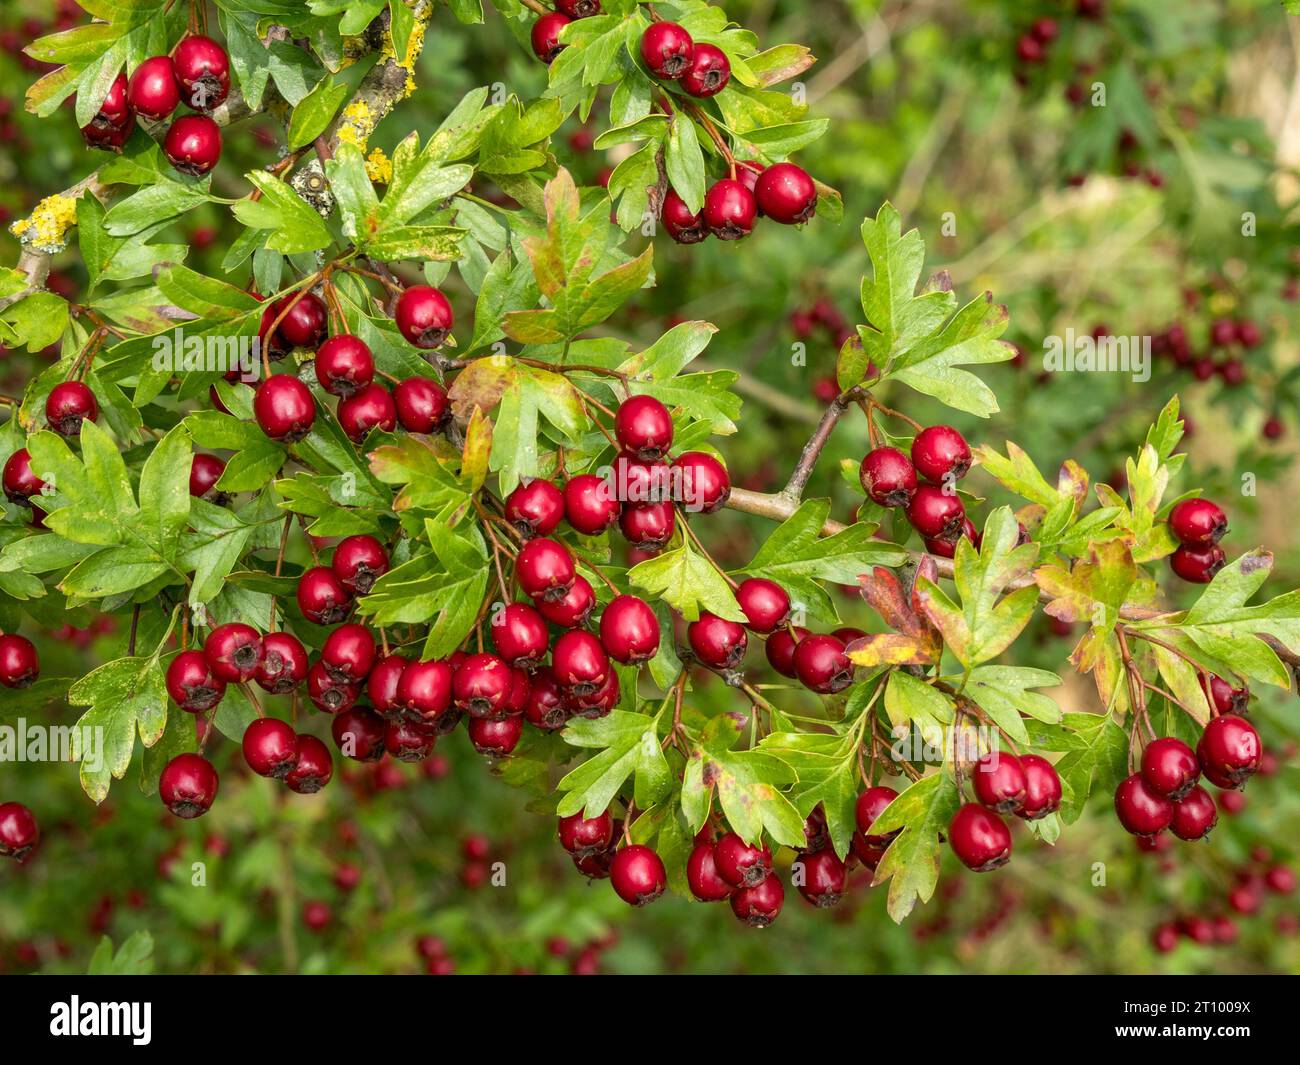 Bacche di biancospino rosso brillante / cremisi che crescono su un arbusto di biancospino comune (Crataegus monogyna) con foglie verdi, in ottobre, Inghilterra, Regno Unito Foto Stock